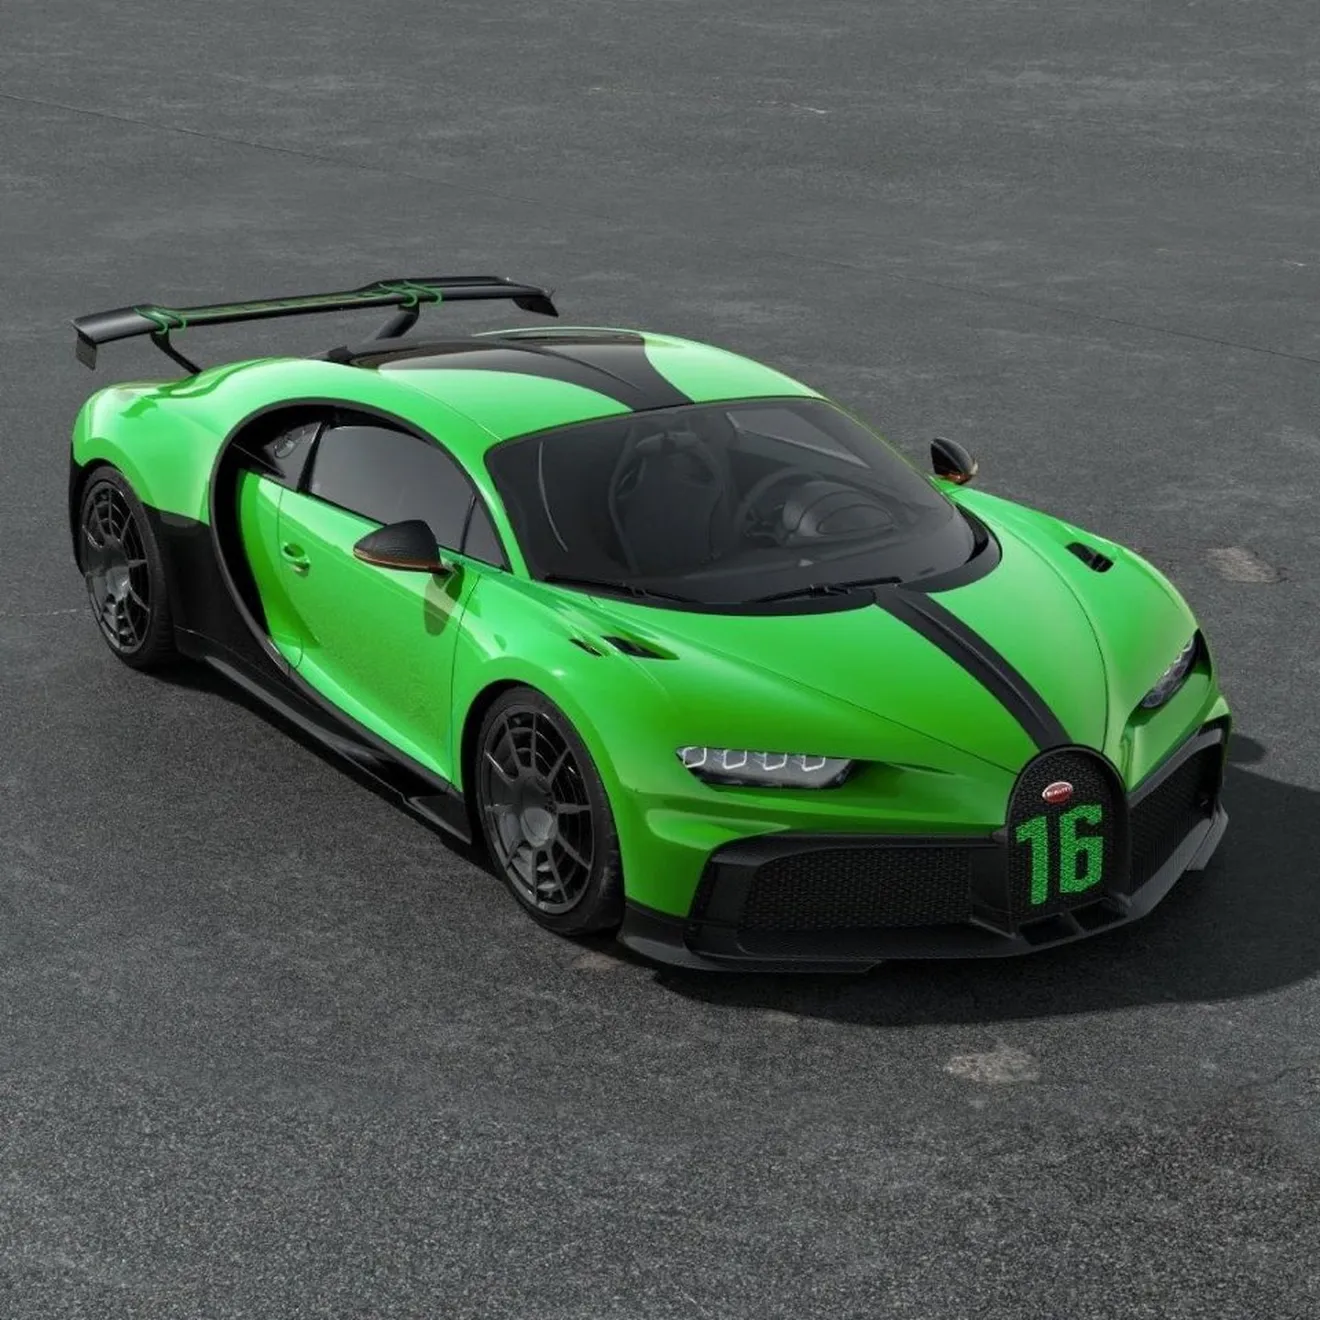 Bugatti nos muestra el primer Chiron verde que hemos visto nunca